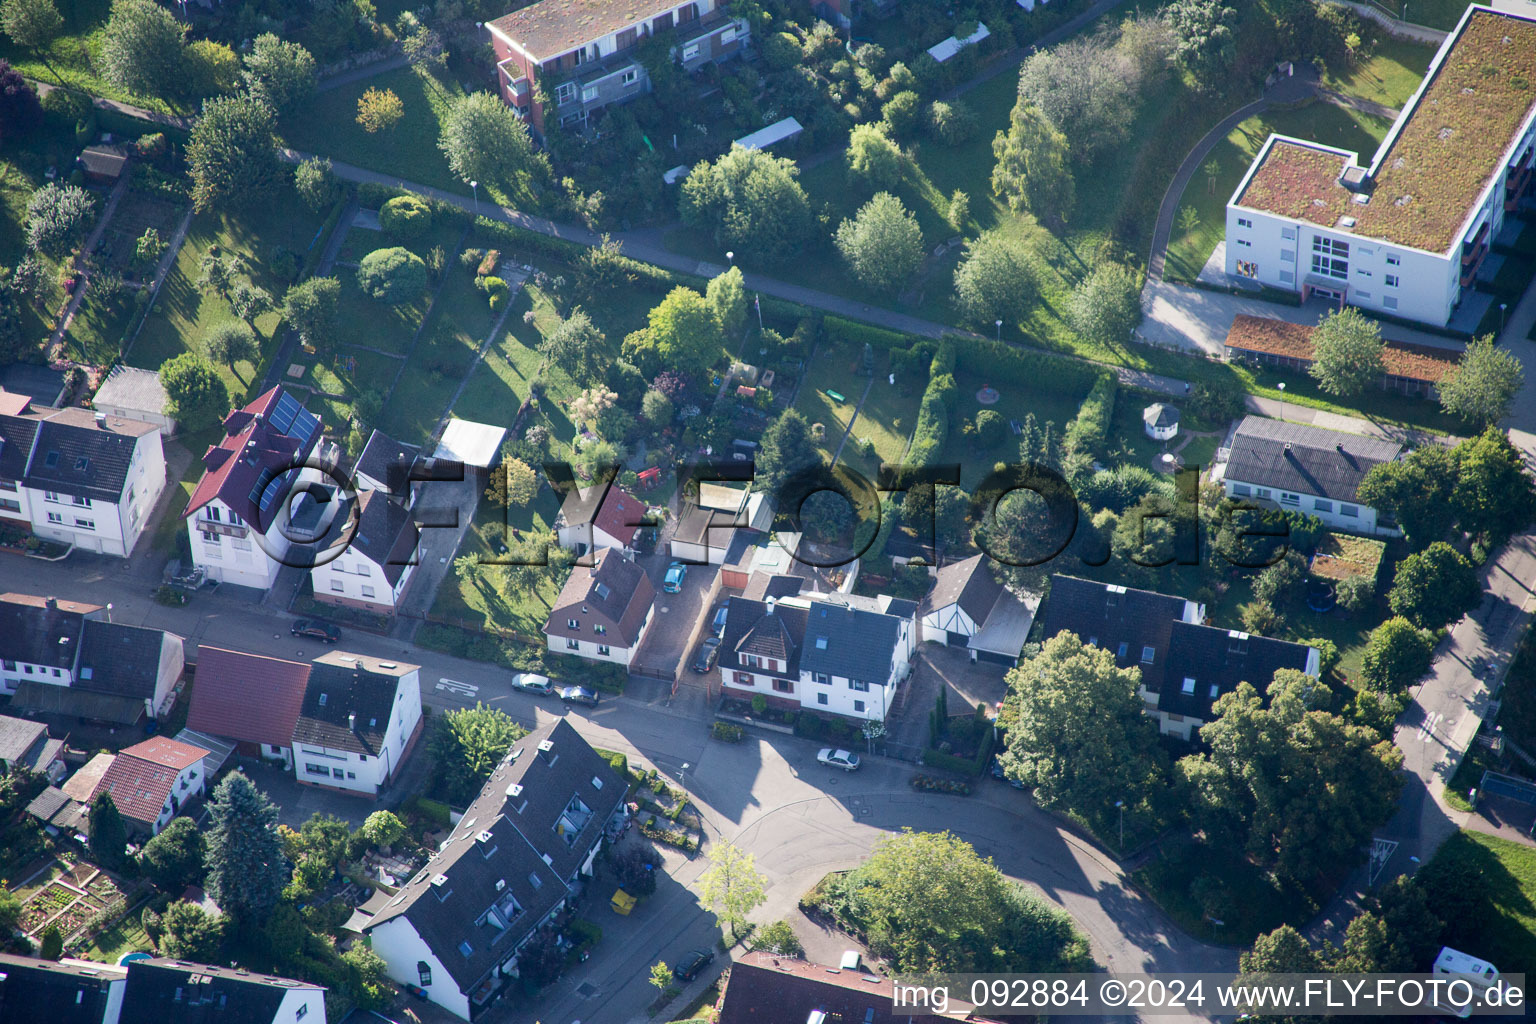 Vue aérienne de Nouvelle façon à le quartier Hohenwettersbach in Karlsruhe dans le département Bade-Wurtemberg, Allemagne